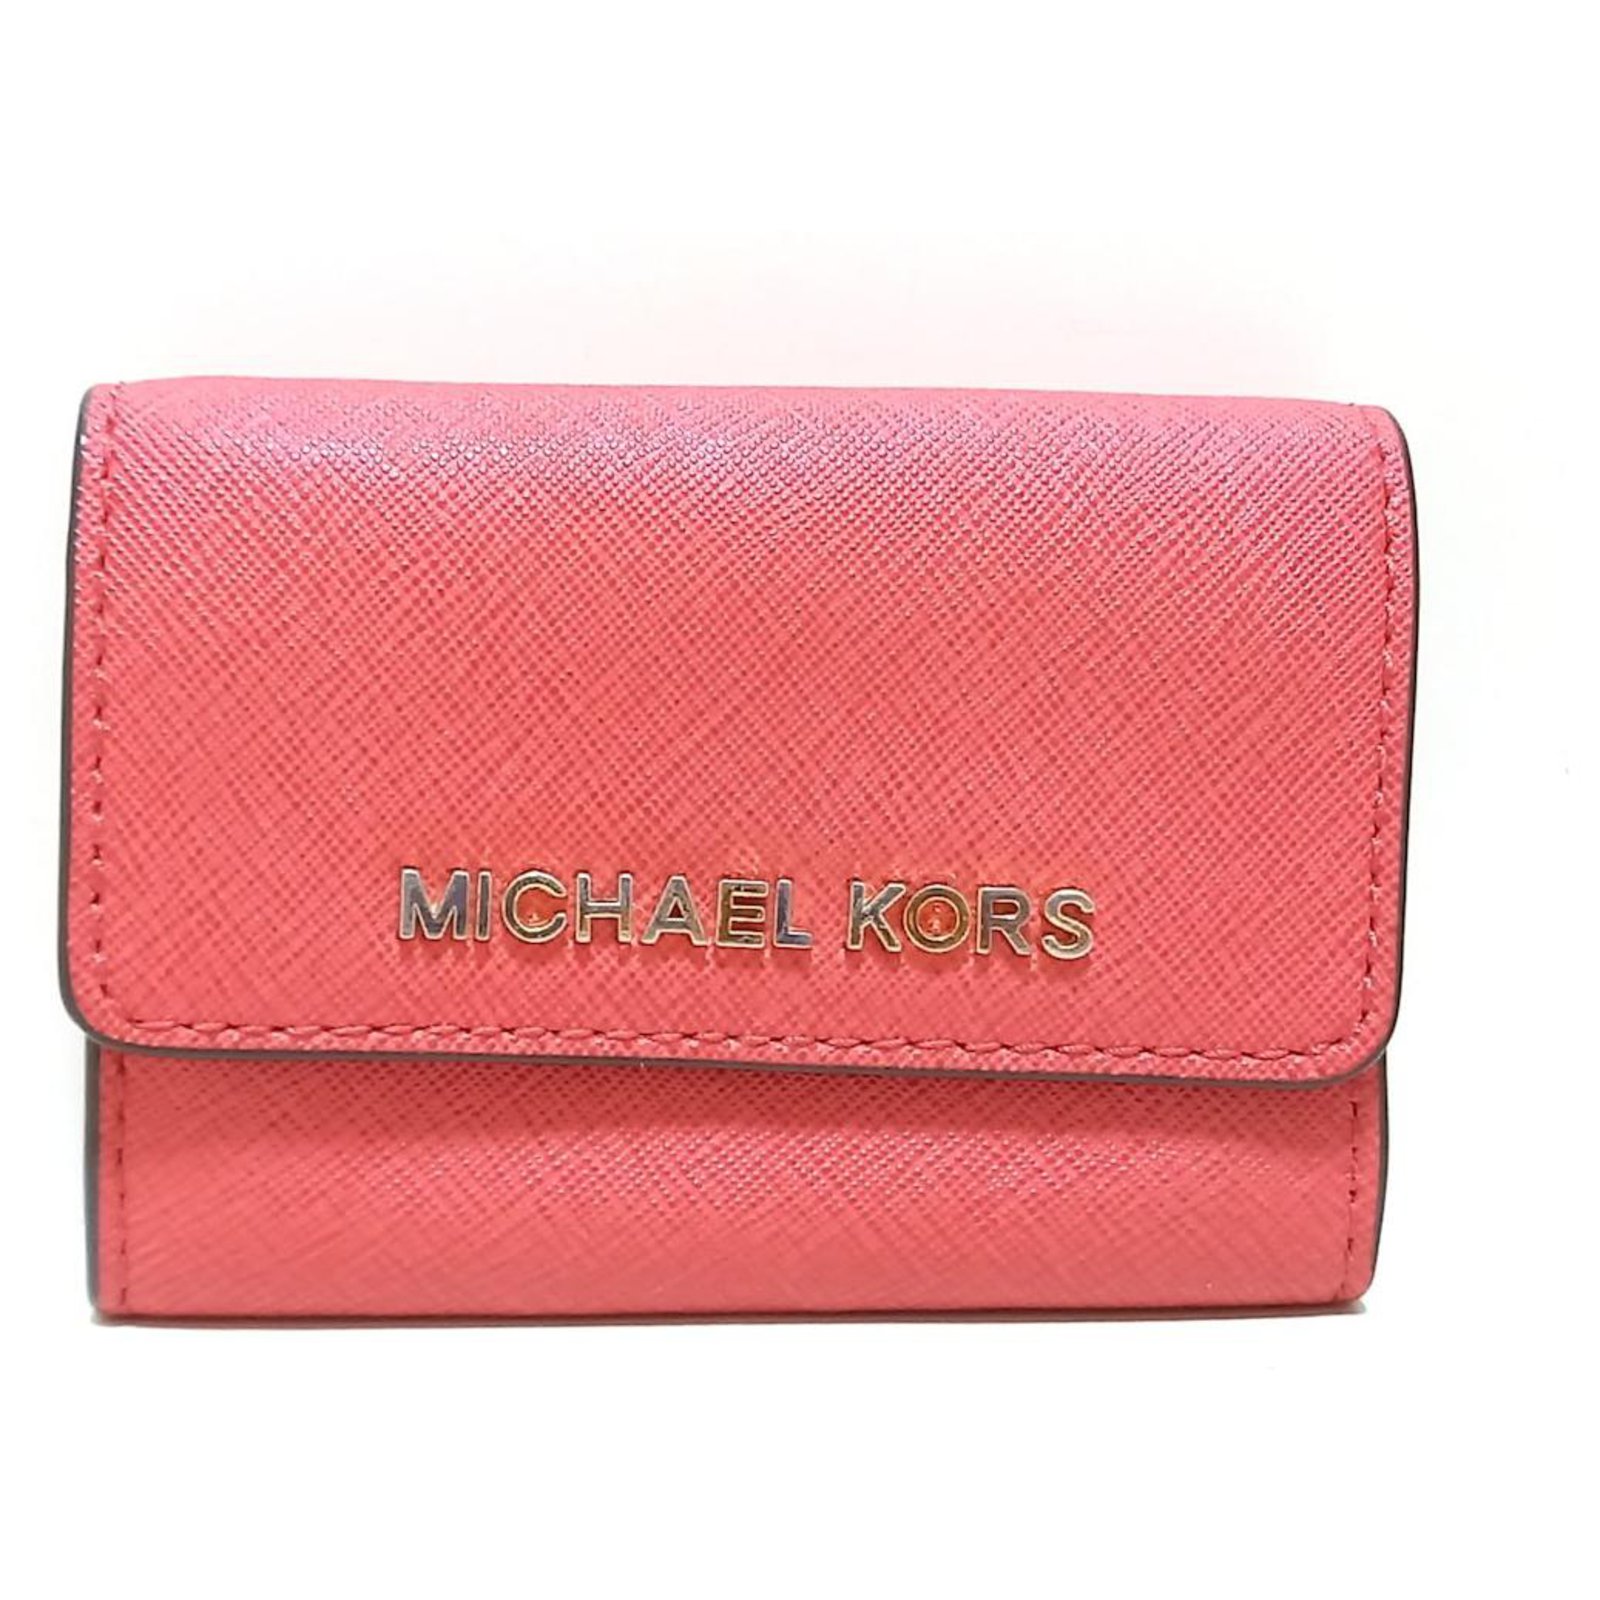 Michael Kors Jet Set Double Zip Wristlet Wallet - Soft Pink | Catch.com.au